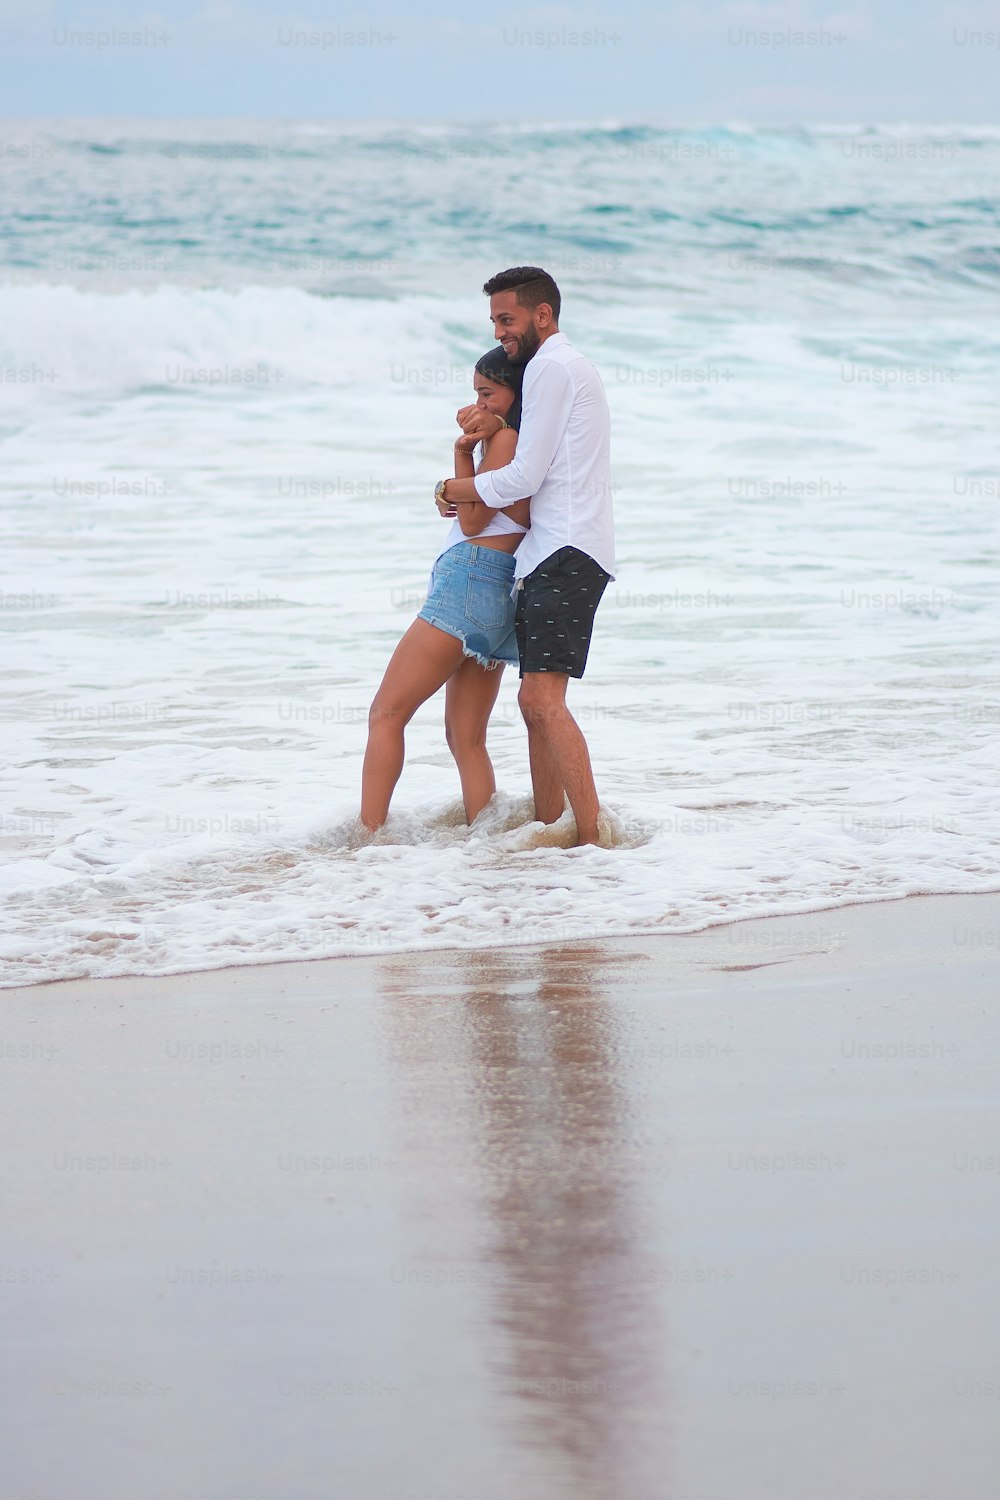 Un homme et une femme s’embrassent sur la plage